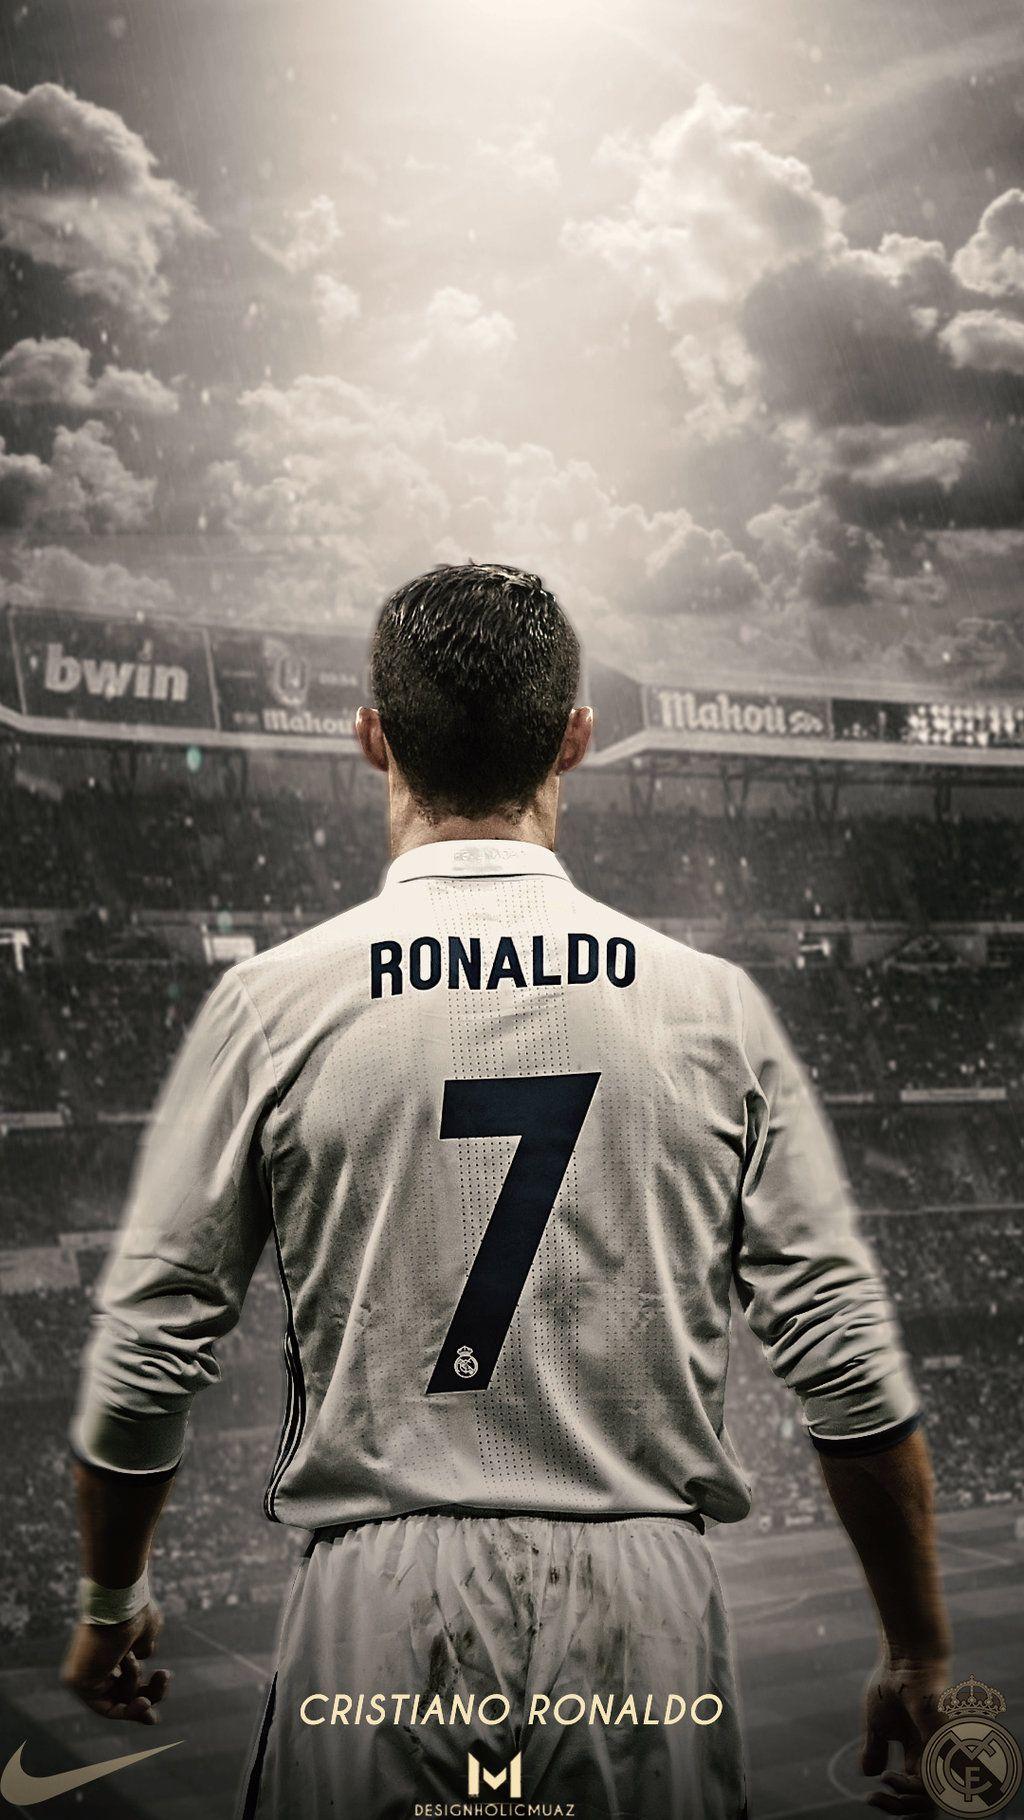 Điều gì khiến Ronaldo lại trở thành ngôi sao nổi tiếng của Real Madrid? Hãy xem những hình nền CR7 Real Madrid đẹp mắt và chất lượng cao này để khám phá thêm những kỹ năng vượt trội của anh chàng này trên sân cỏ.